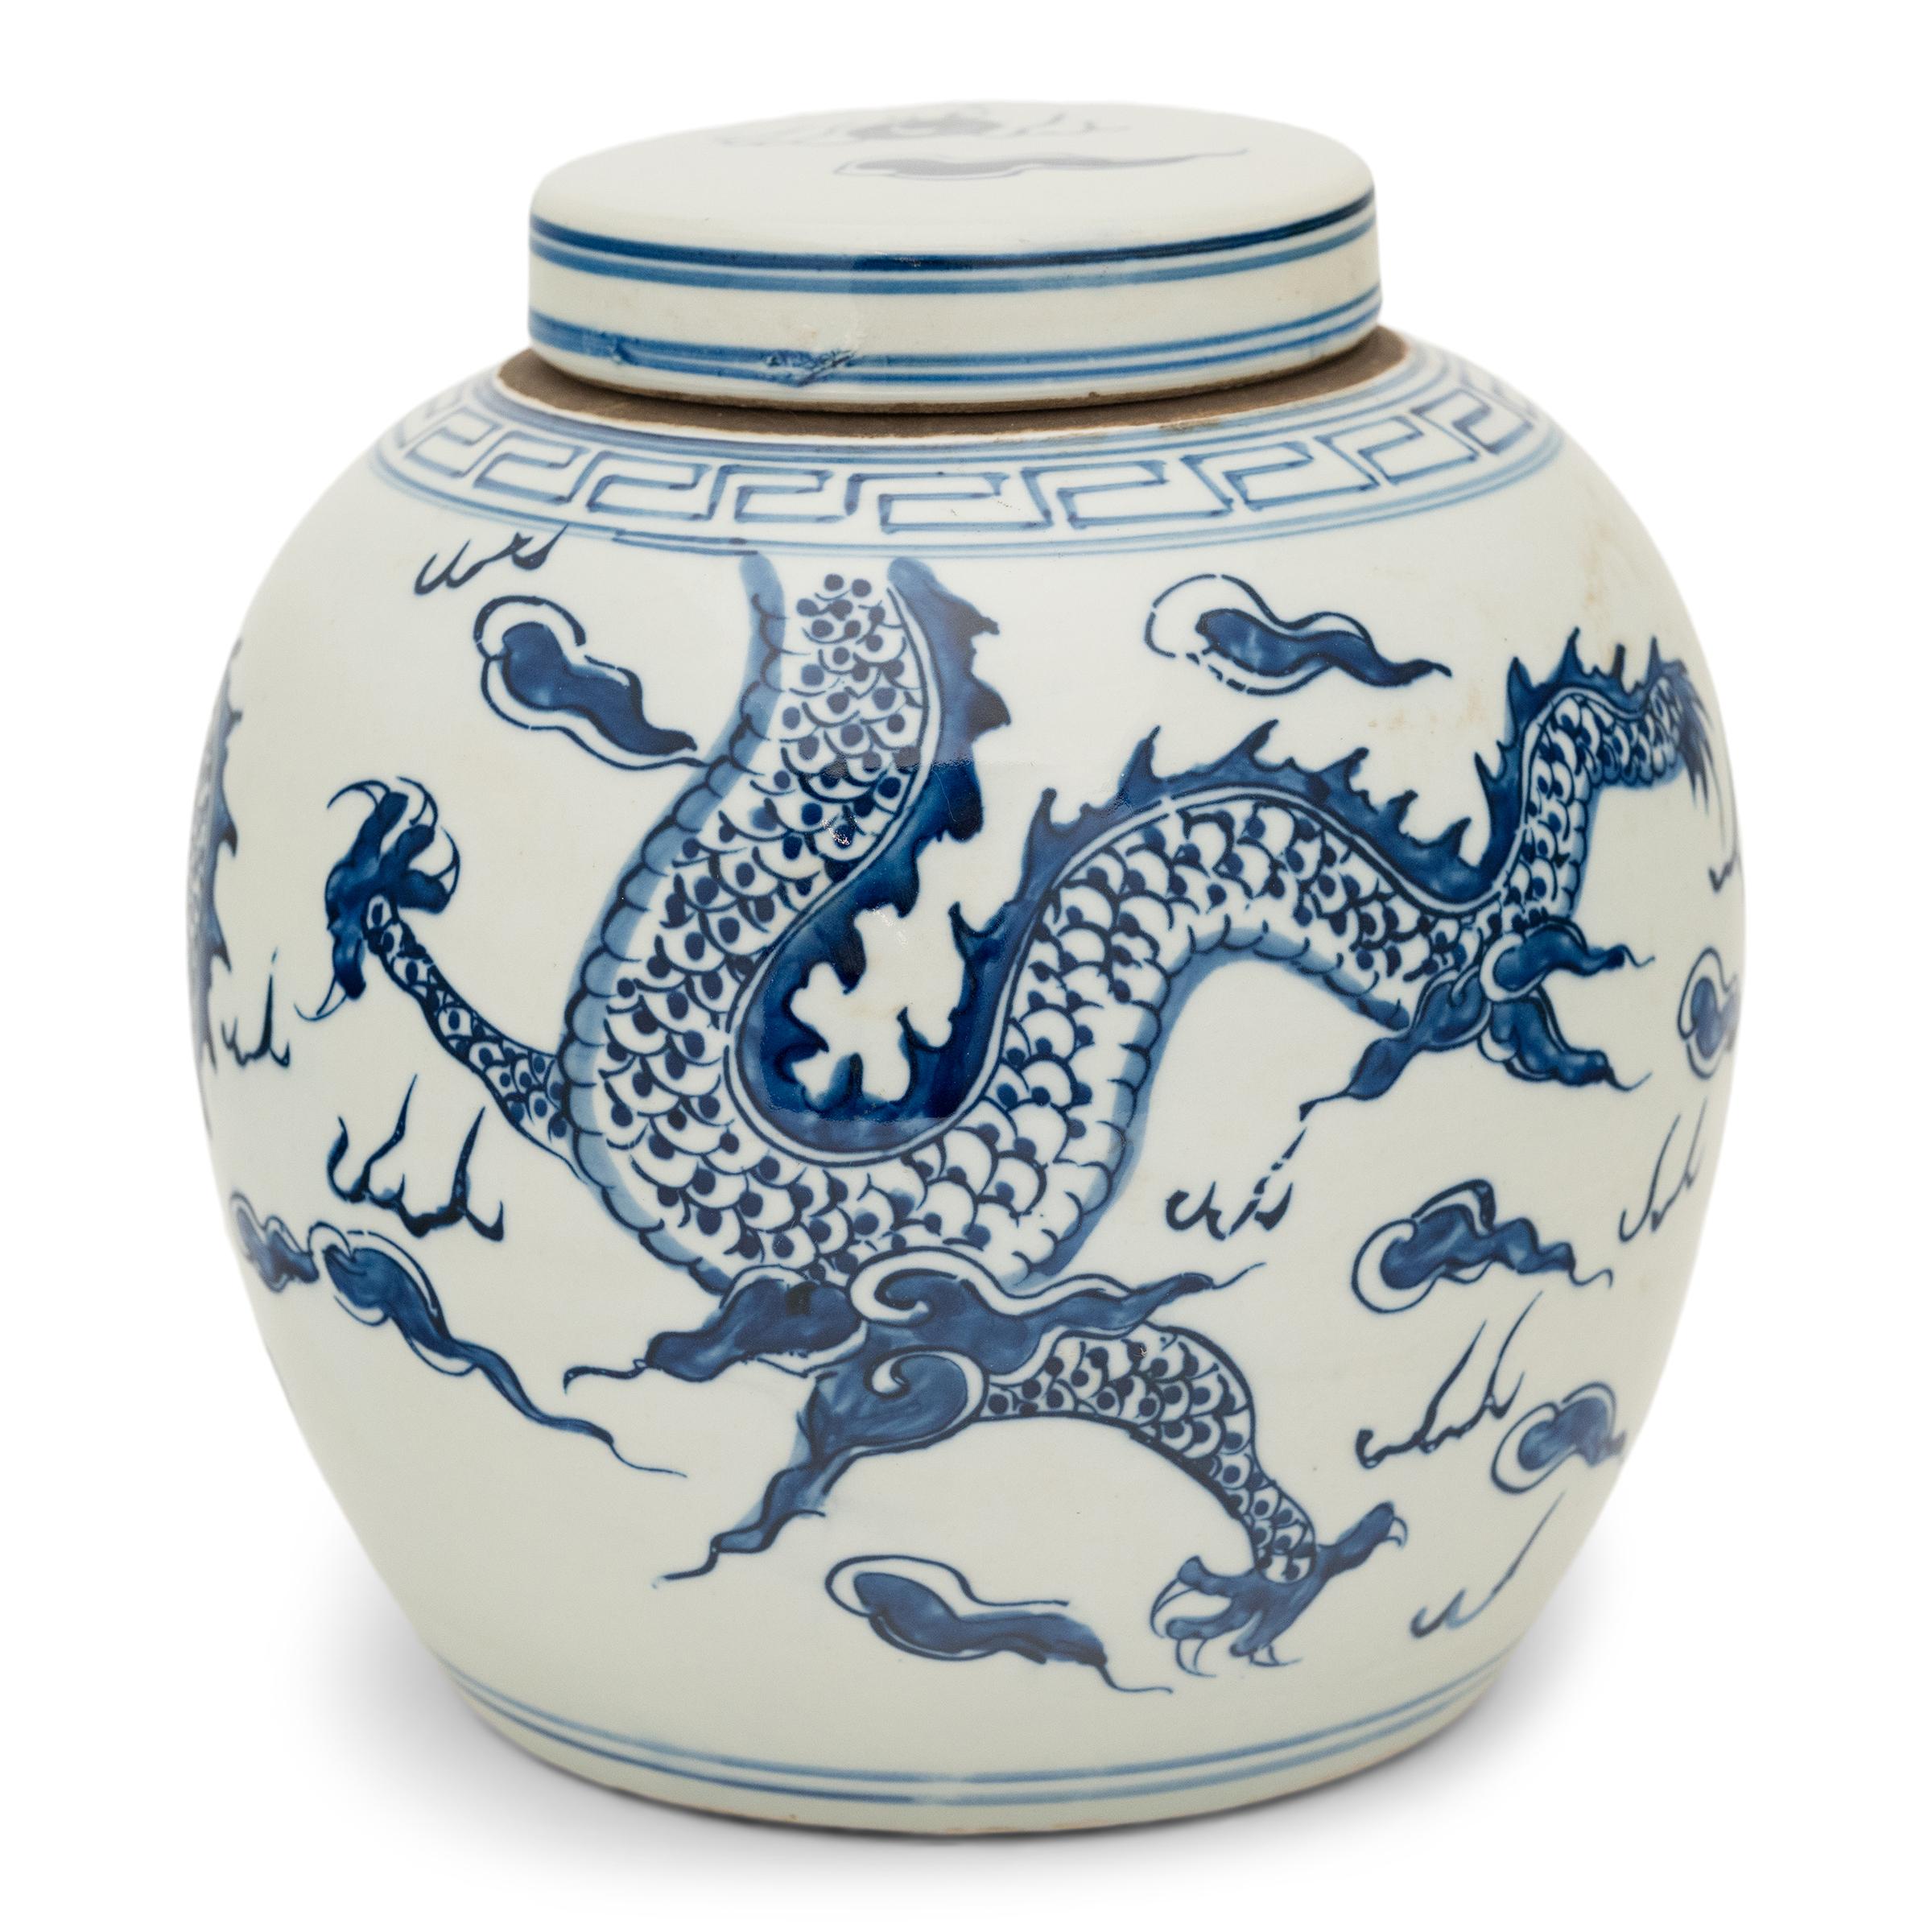 Questo grande vaso di porcellana è splendidamente smaltato nel classico stile bianco e blu, con decorazioni blu cobalto dipinte a mano su un campo bianco nitido. Il barattolo ha una forma arrotondata e un coperchio piatto, una forma tradizionale per